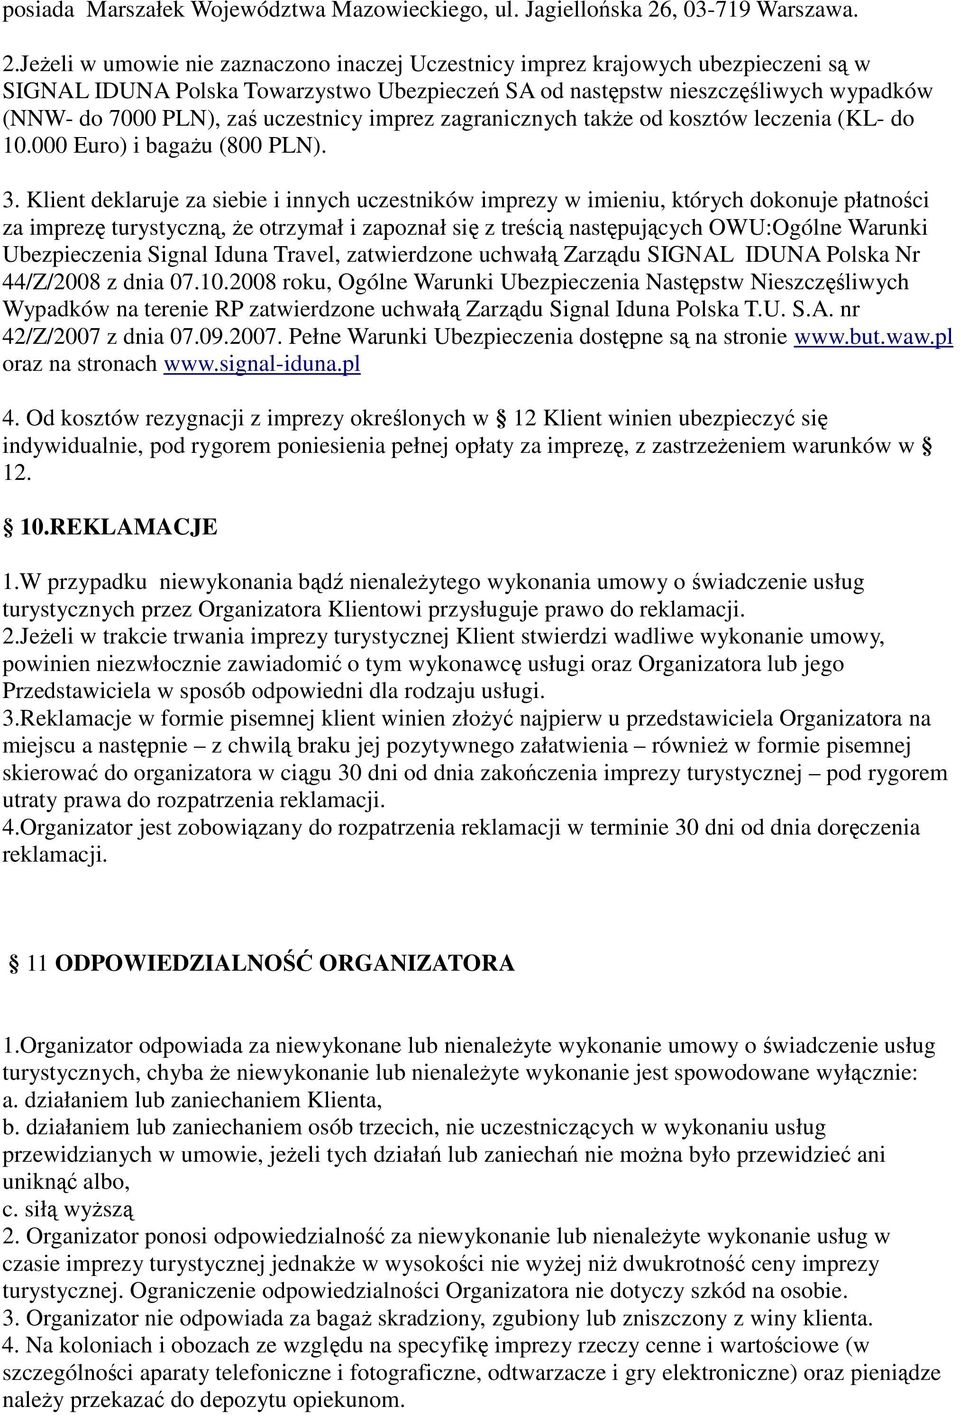 Jeeli w umowie nie zaznaczono inaczej Uczestnicy imprez krajowych ubezpieczeni s w SIGNAL IDUNA Polska Towarzystwo Ubezpiecze SA od nastpstw nieszczliwych wypadków (NNW- do 7000 PLN), za uczestnicy